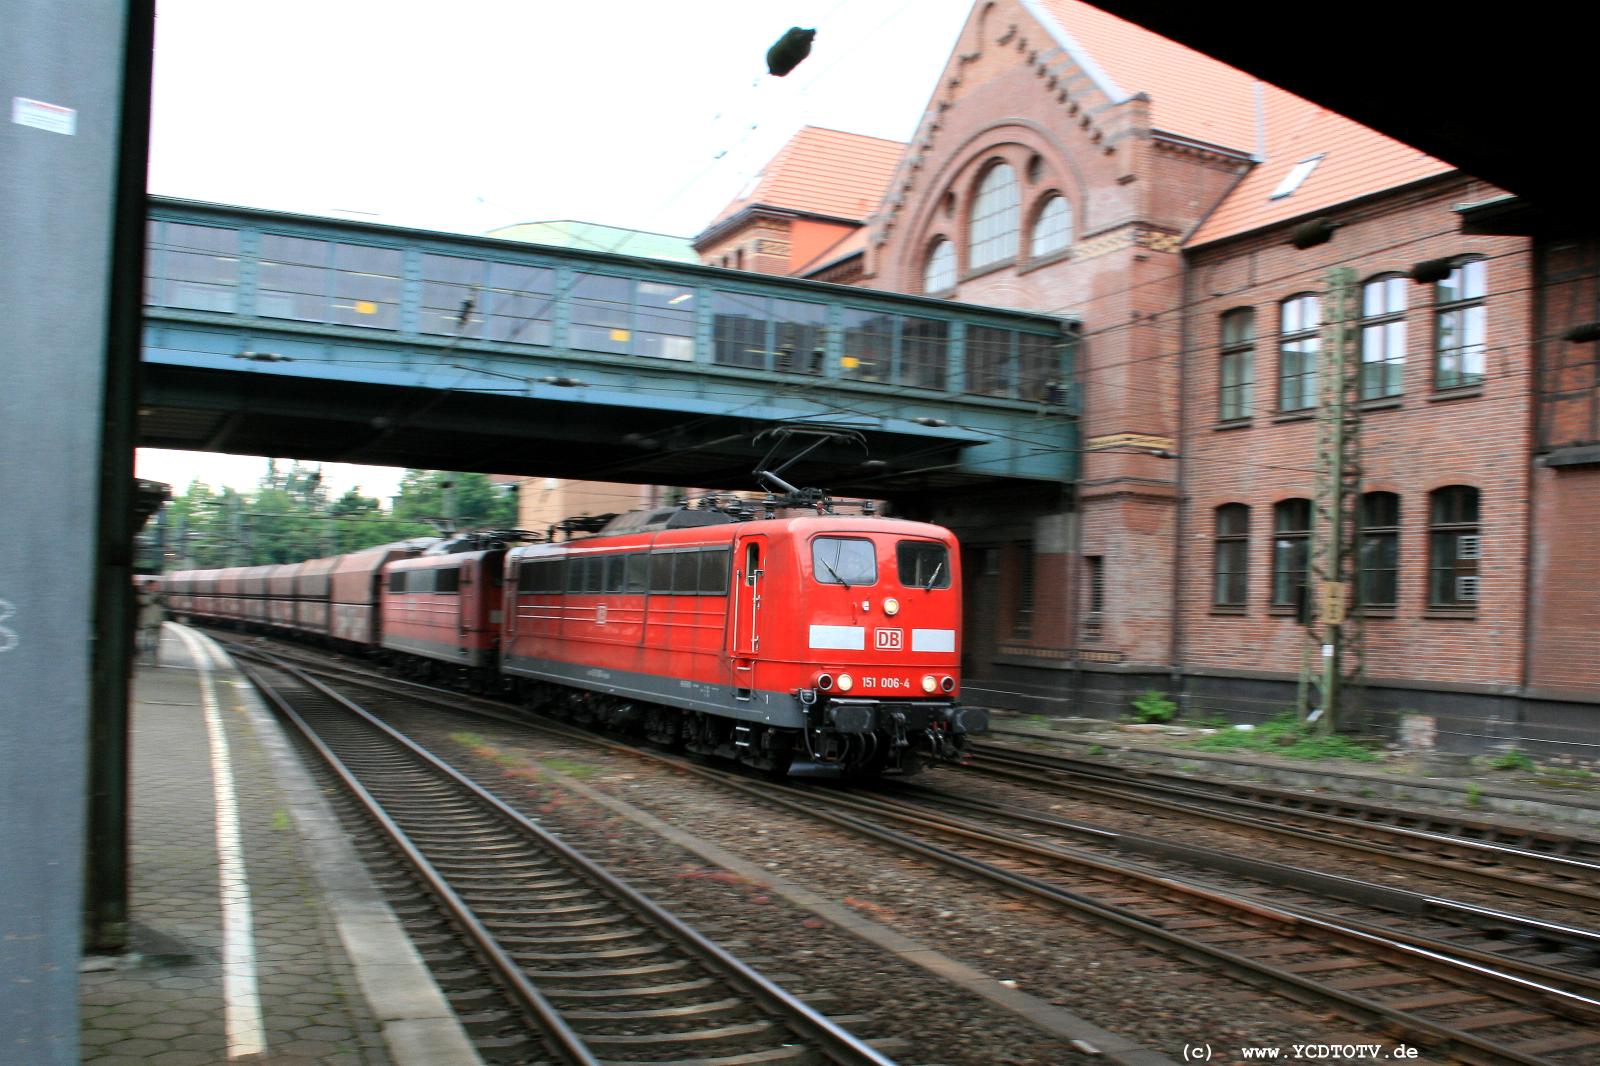  Bahnhof Hamburg-Harburg, 18.05.2011, 14:29 151 006-4 und 151 165-8 gen Norden 